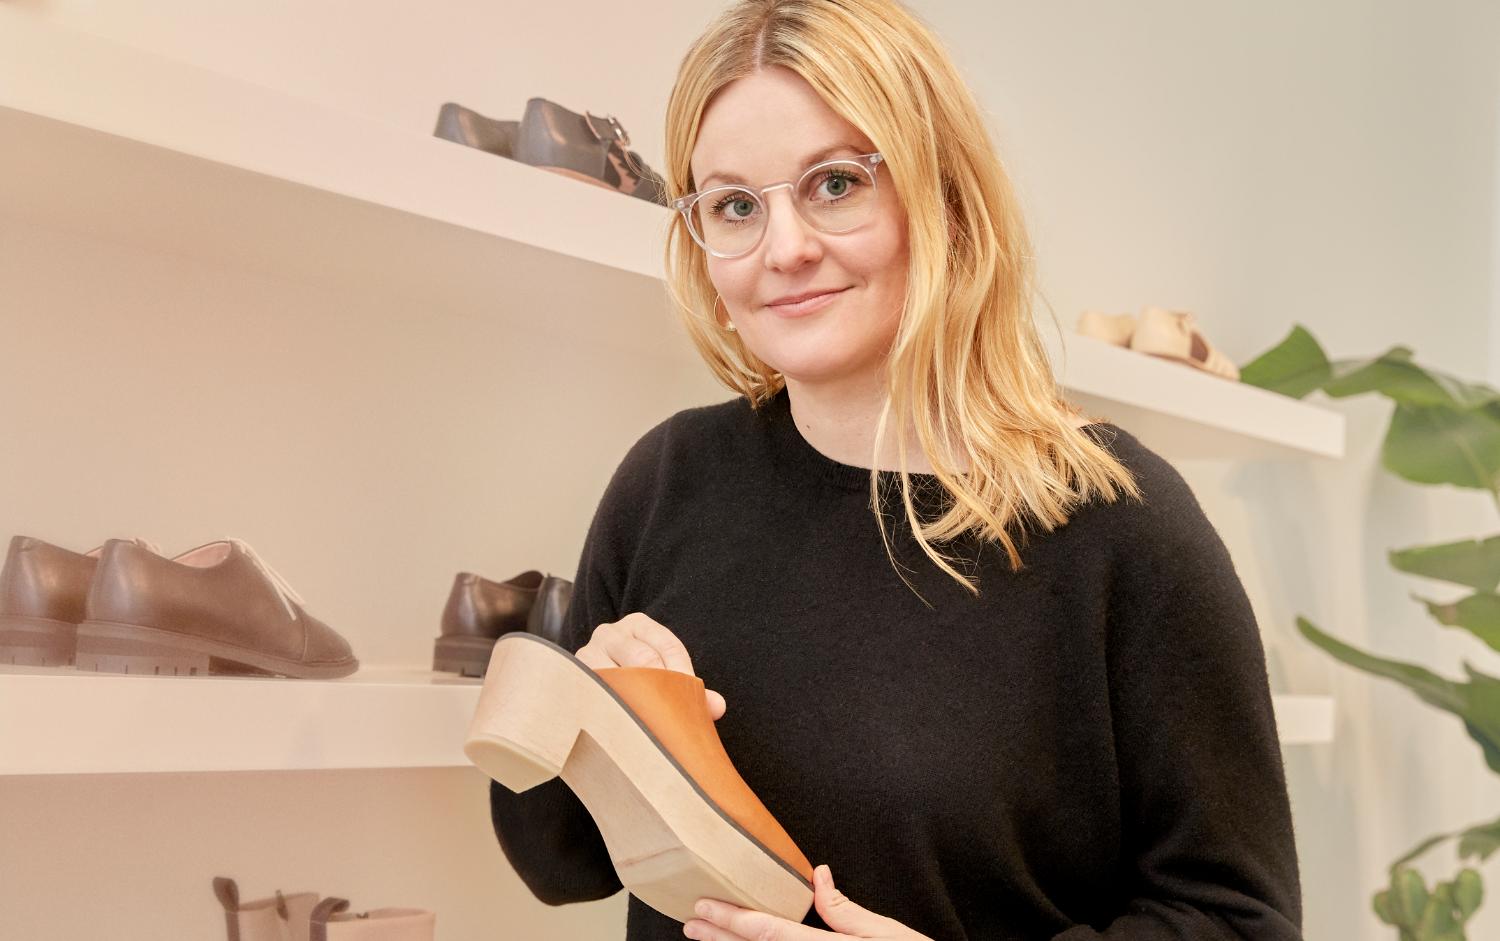 Сама дизайнер держит в руках обувь во флагманском магазине Terhi Pölkki в Хельсинки